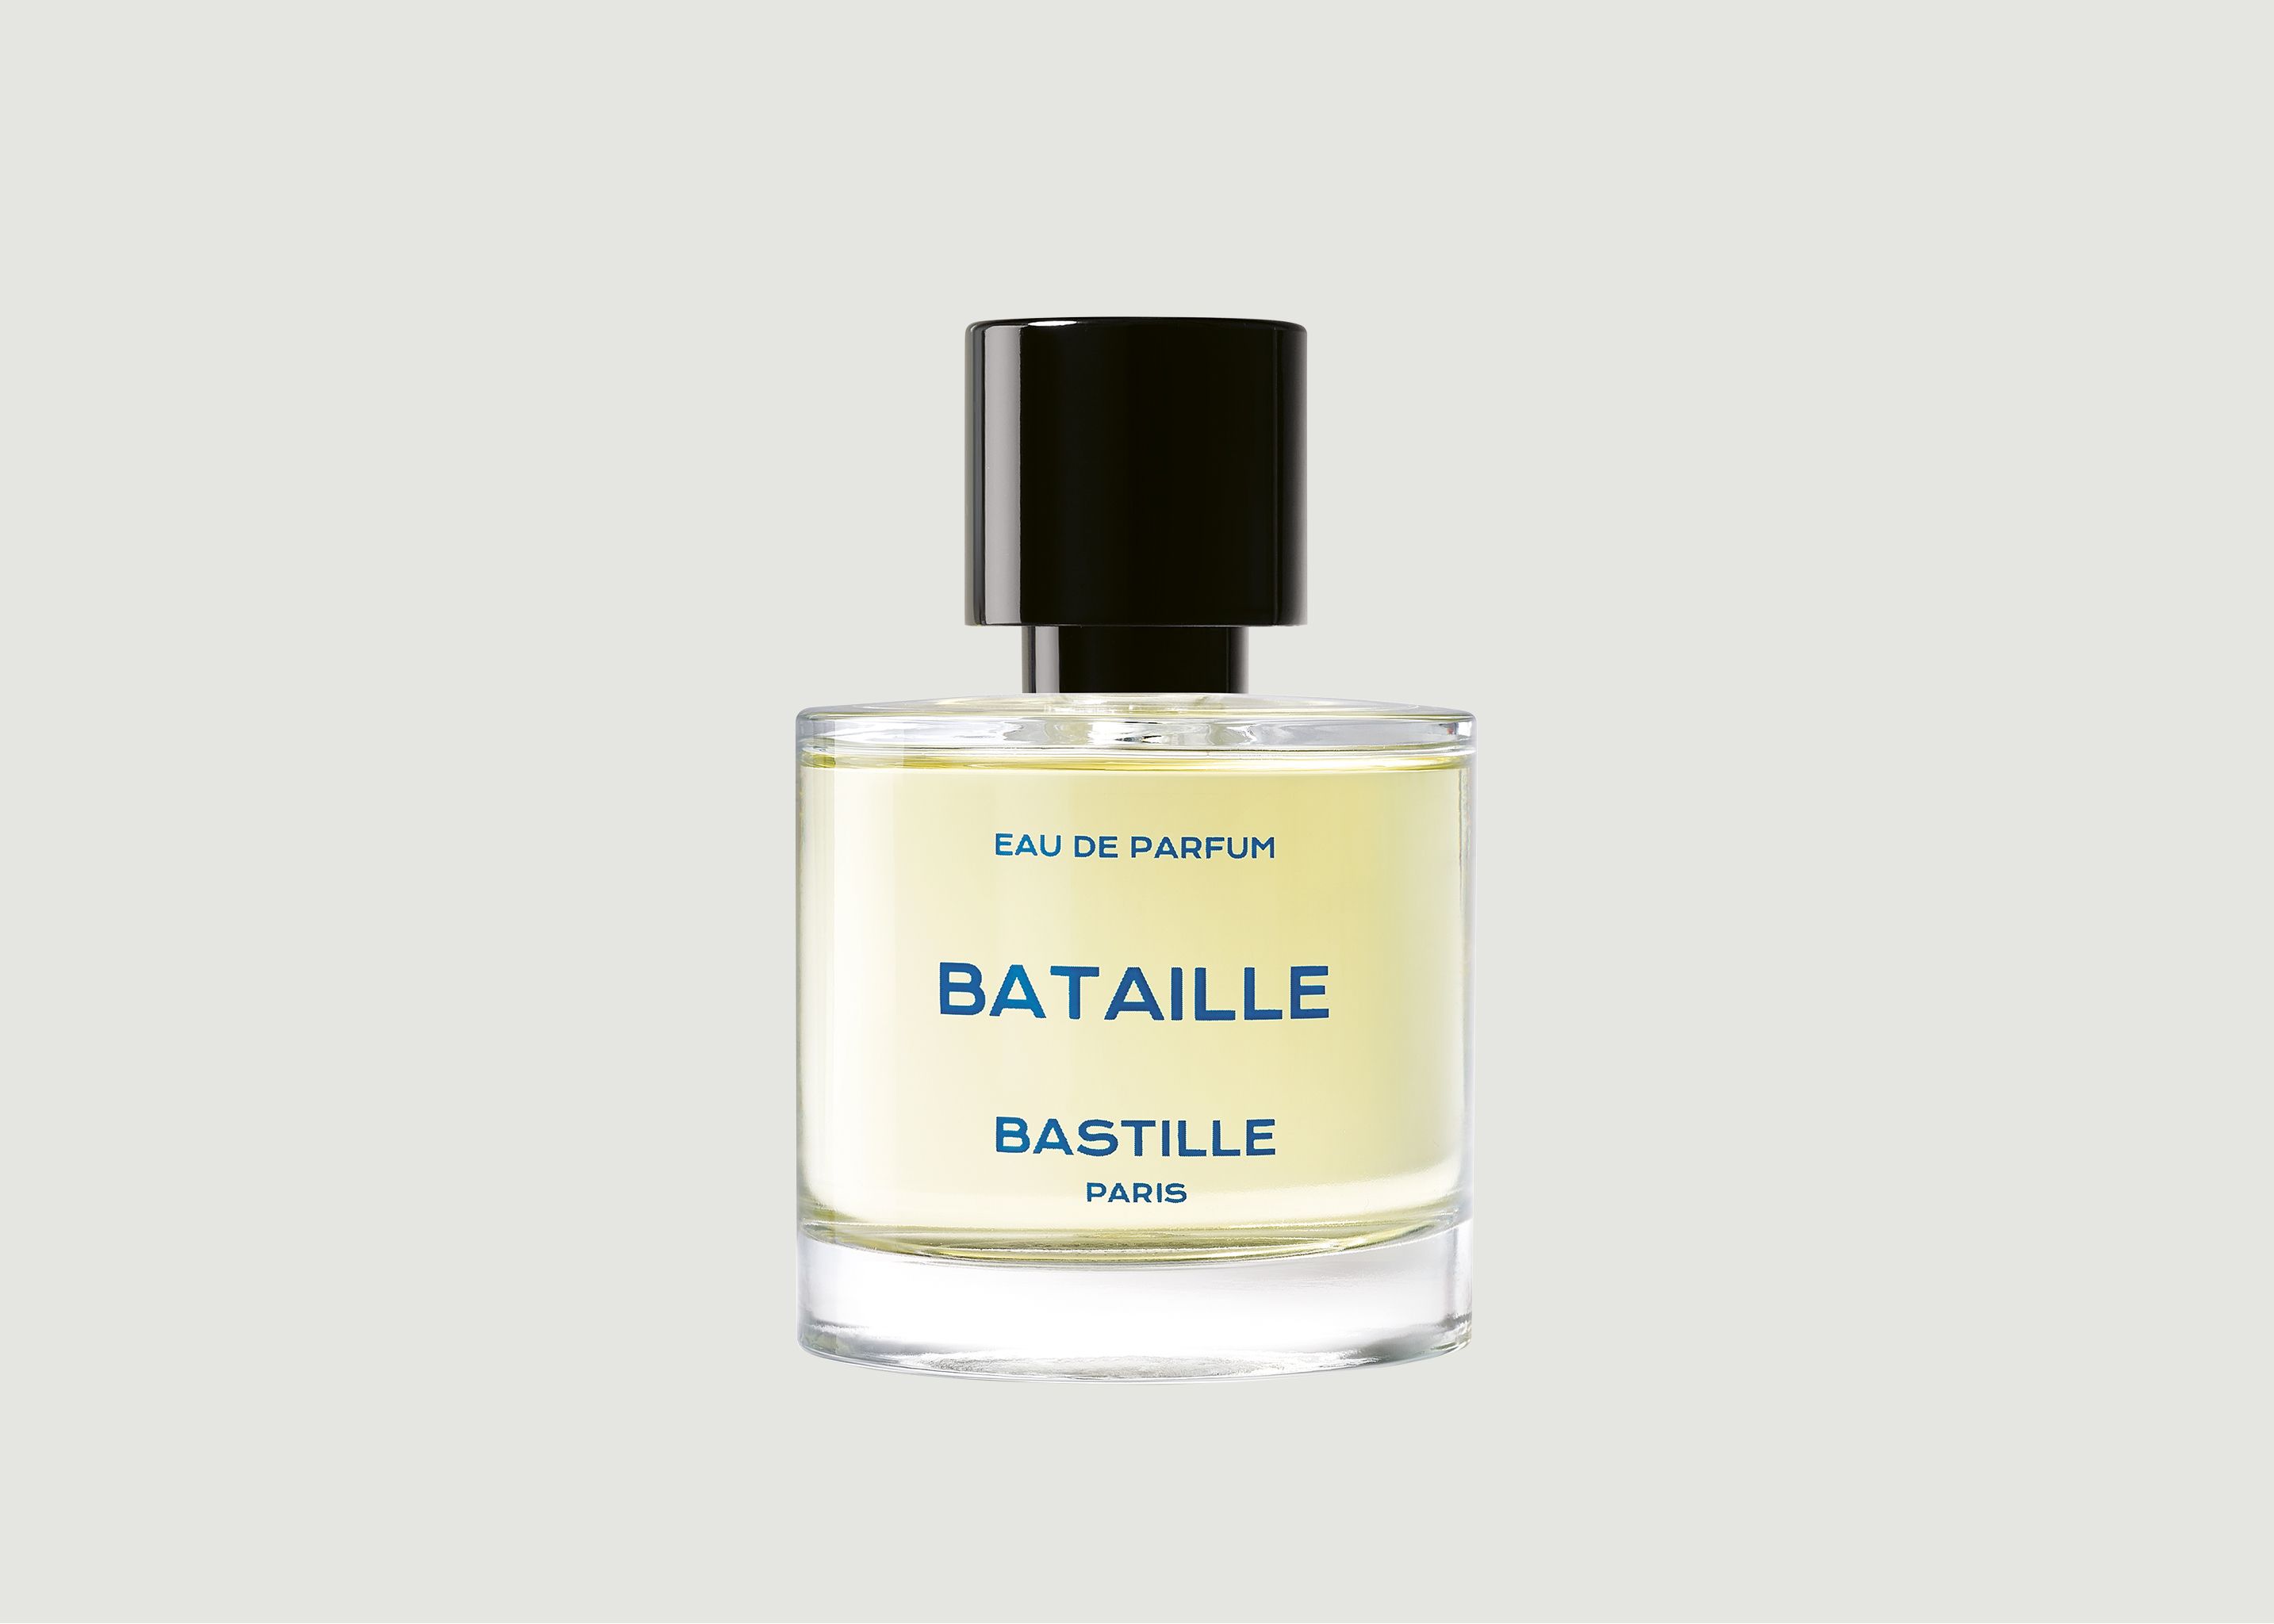 Eau de parfum Bataille 30mL - Bastille Paris